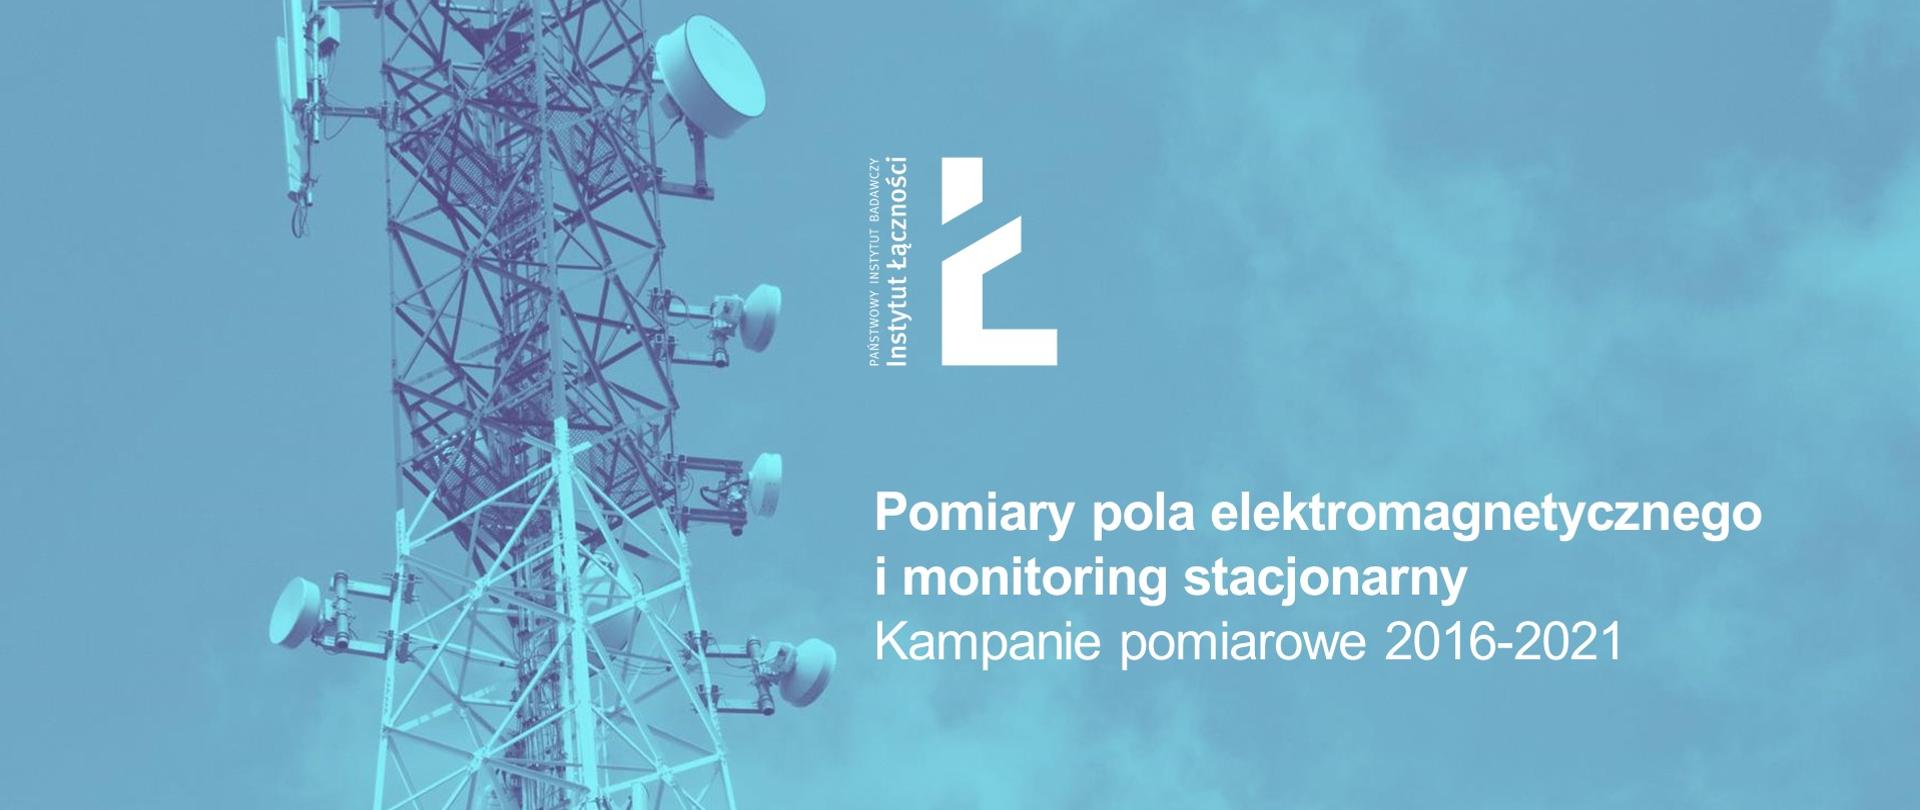 Ilustracja przedstawia zdjęcie masztu telekomunikacyjnego w tonacji błękitnej. Na jego tle w kolorze białym logo Instytutu Łączności i napis: Pomiary pola elektromagnetycznego i monitoring stacjonarny. Kampanie pomiarowe 2016-2021.